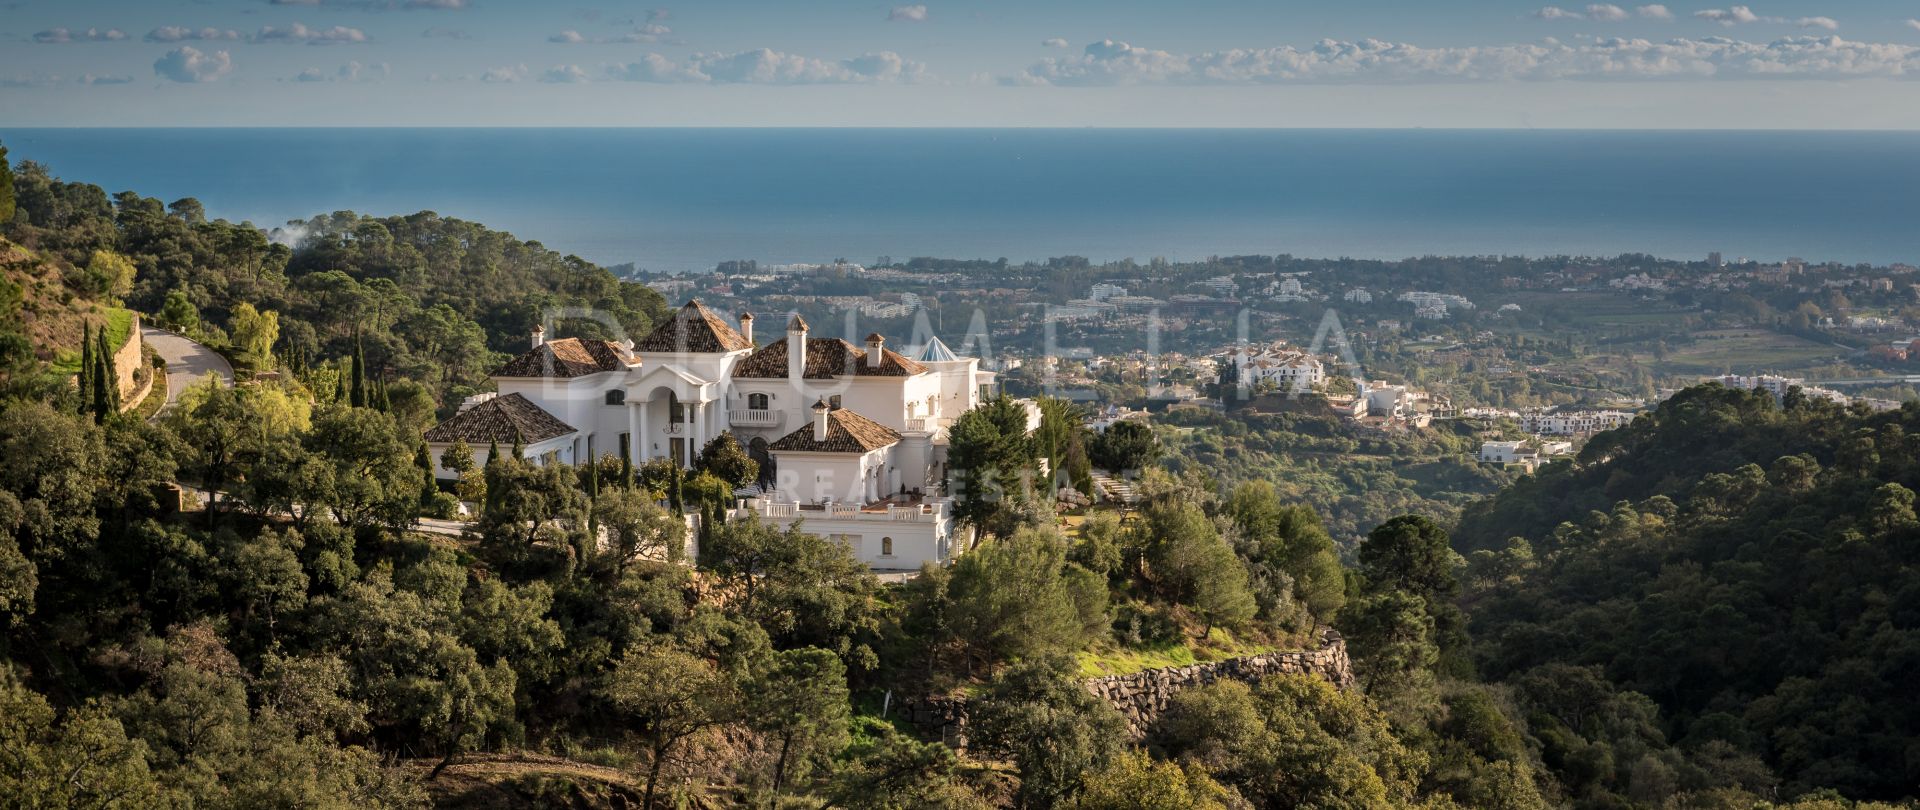 Enastående lyxvilla i Beverly Hills-stil med panoramautsikt över havet i La Zagaleta, Benahavis